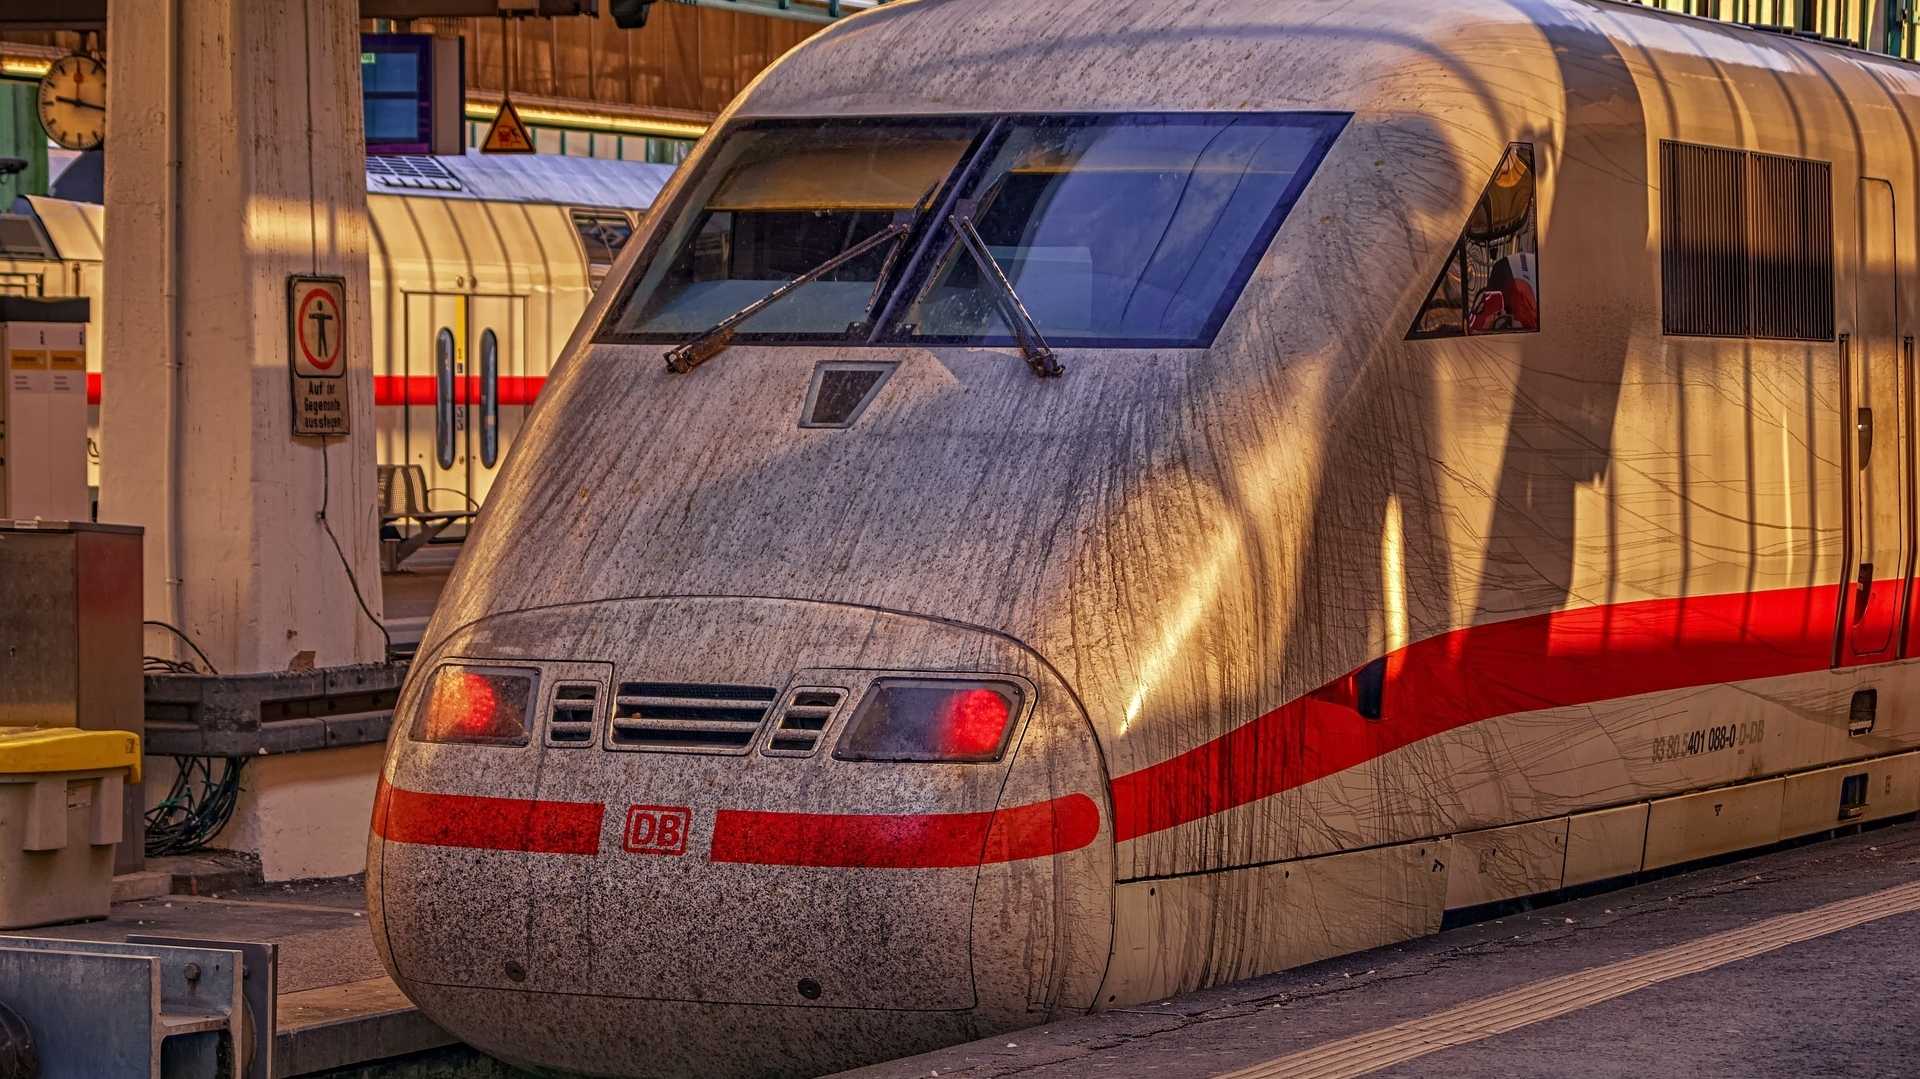 ICE-Zug im Bahnhof während GDL-Streik bei der Deutschen Bahn